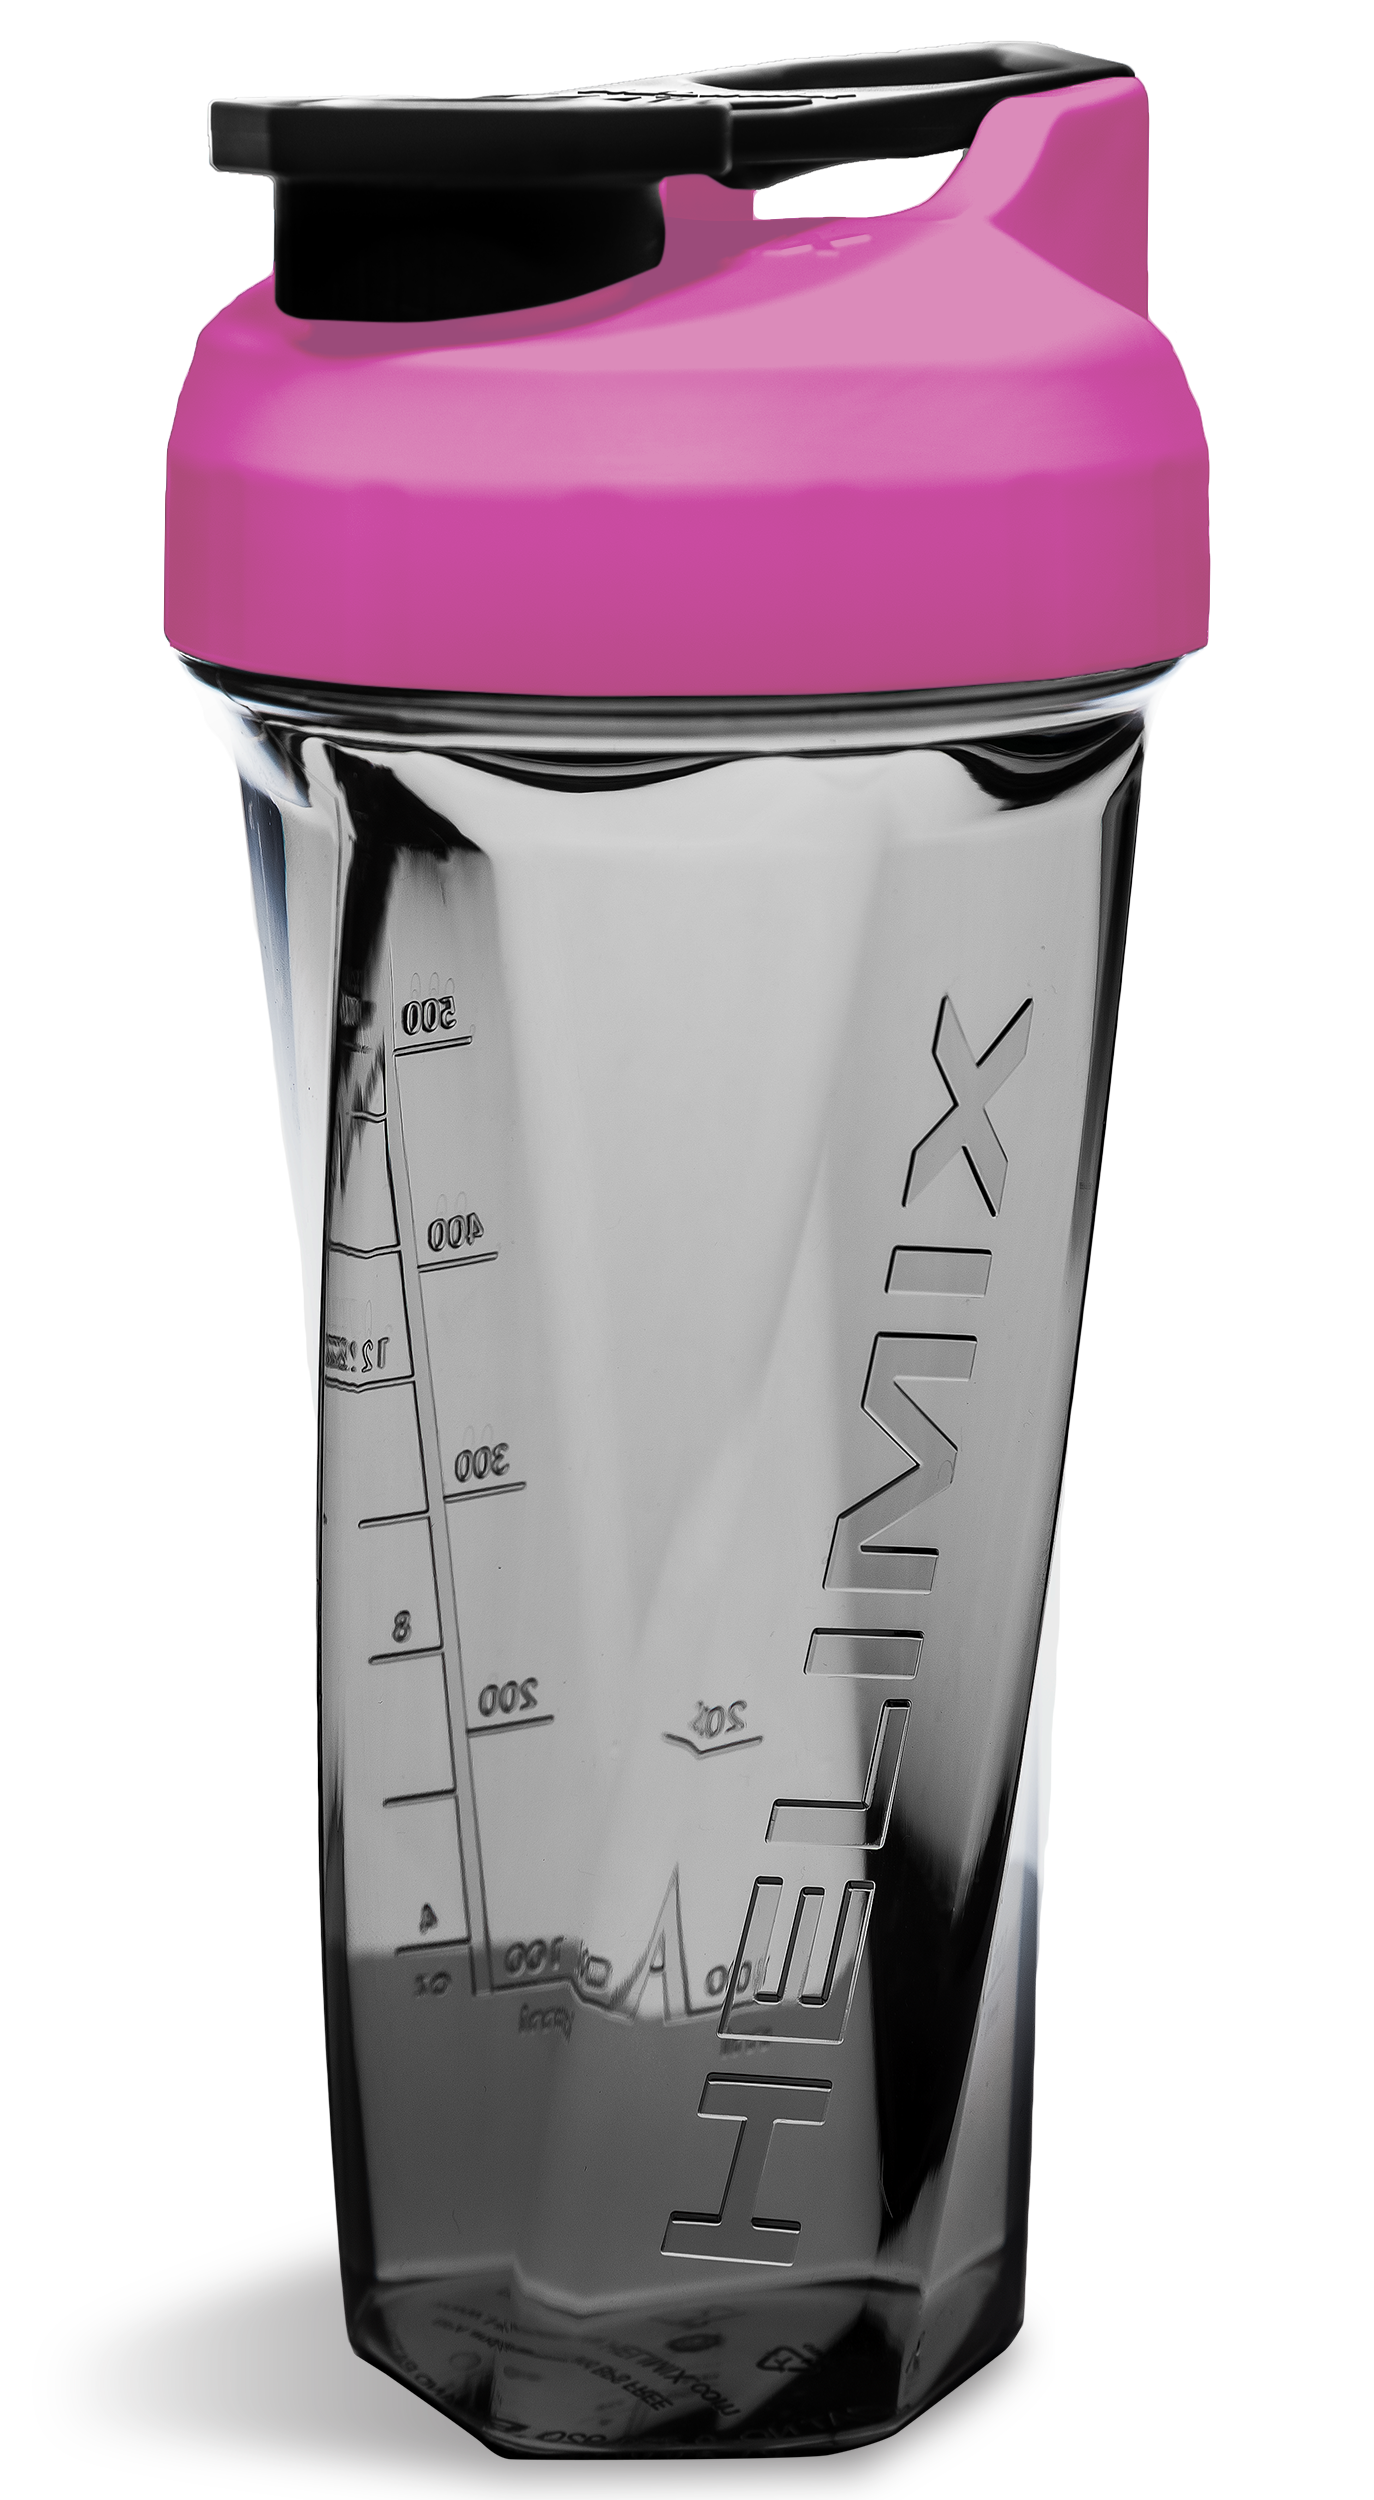 Magenta Pink 26oz Stainless Steel Shaker Blender Bottle